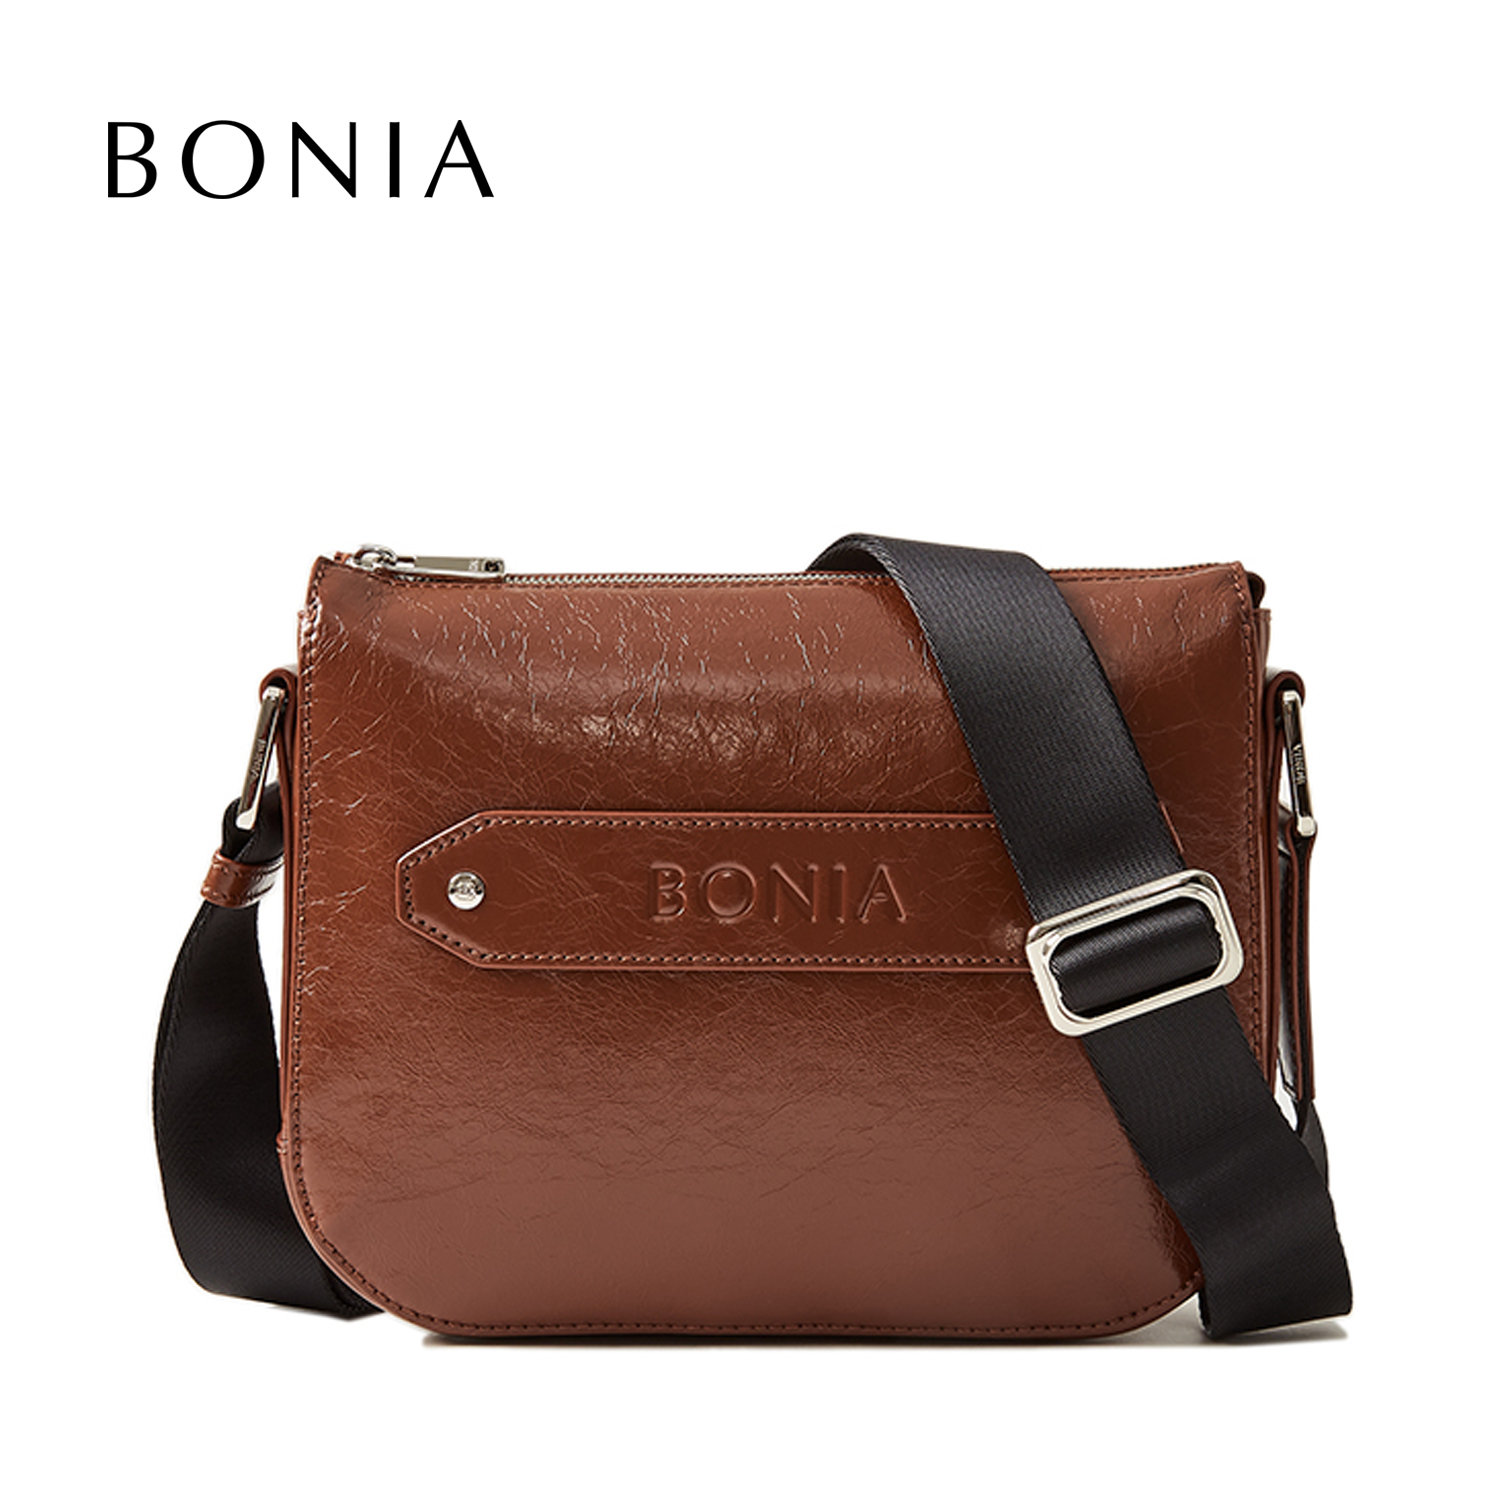 Affordable bonia bag For Sale